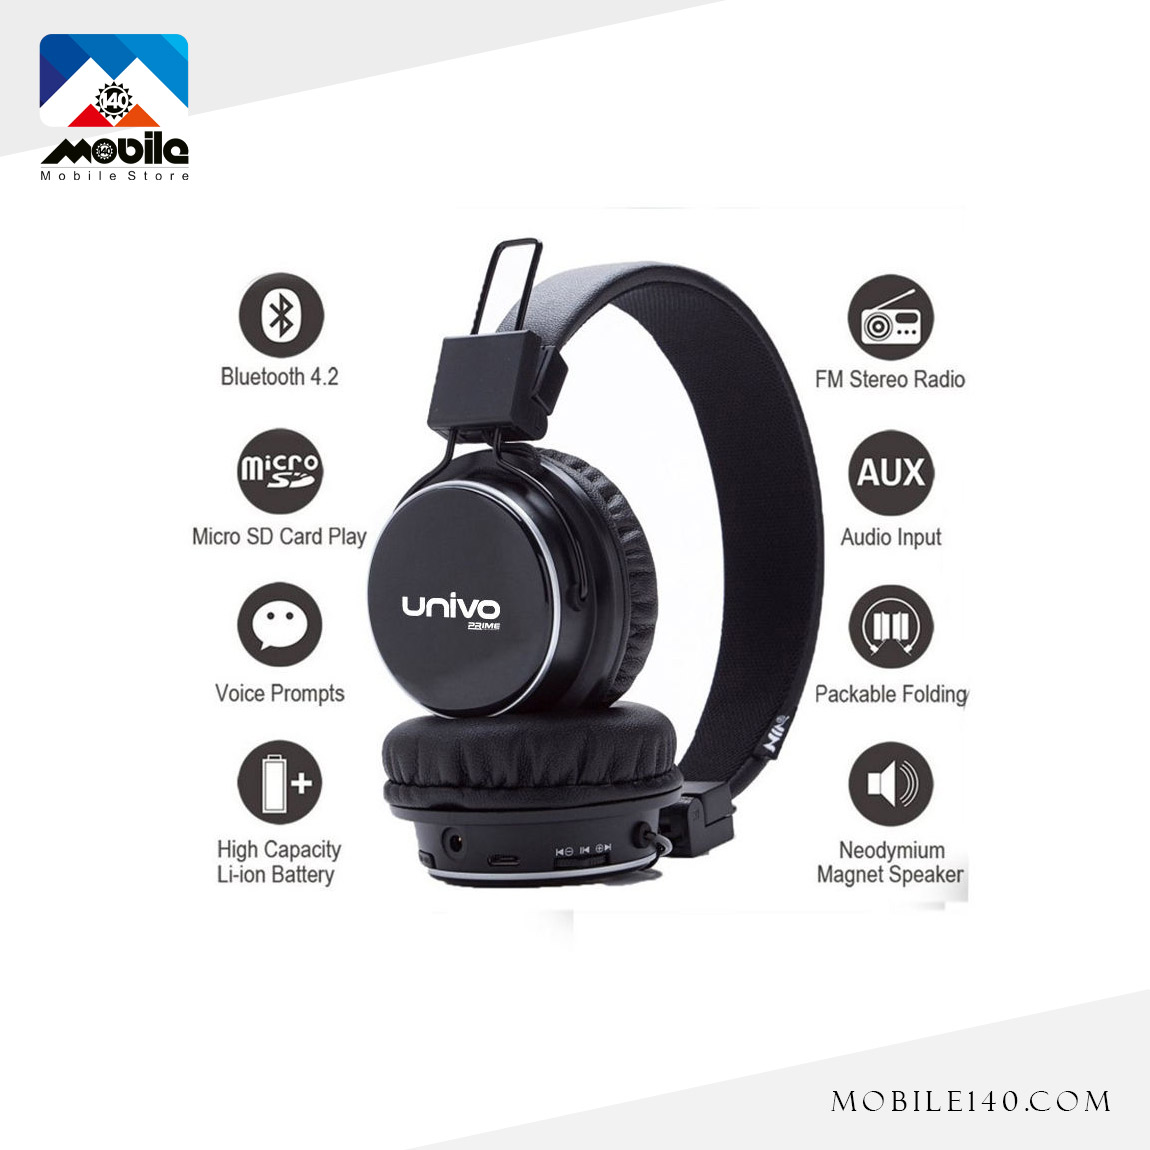  Univo Sound Boss UN800BT Bluetooth Headphone 6